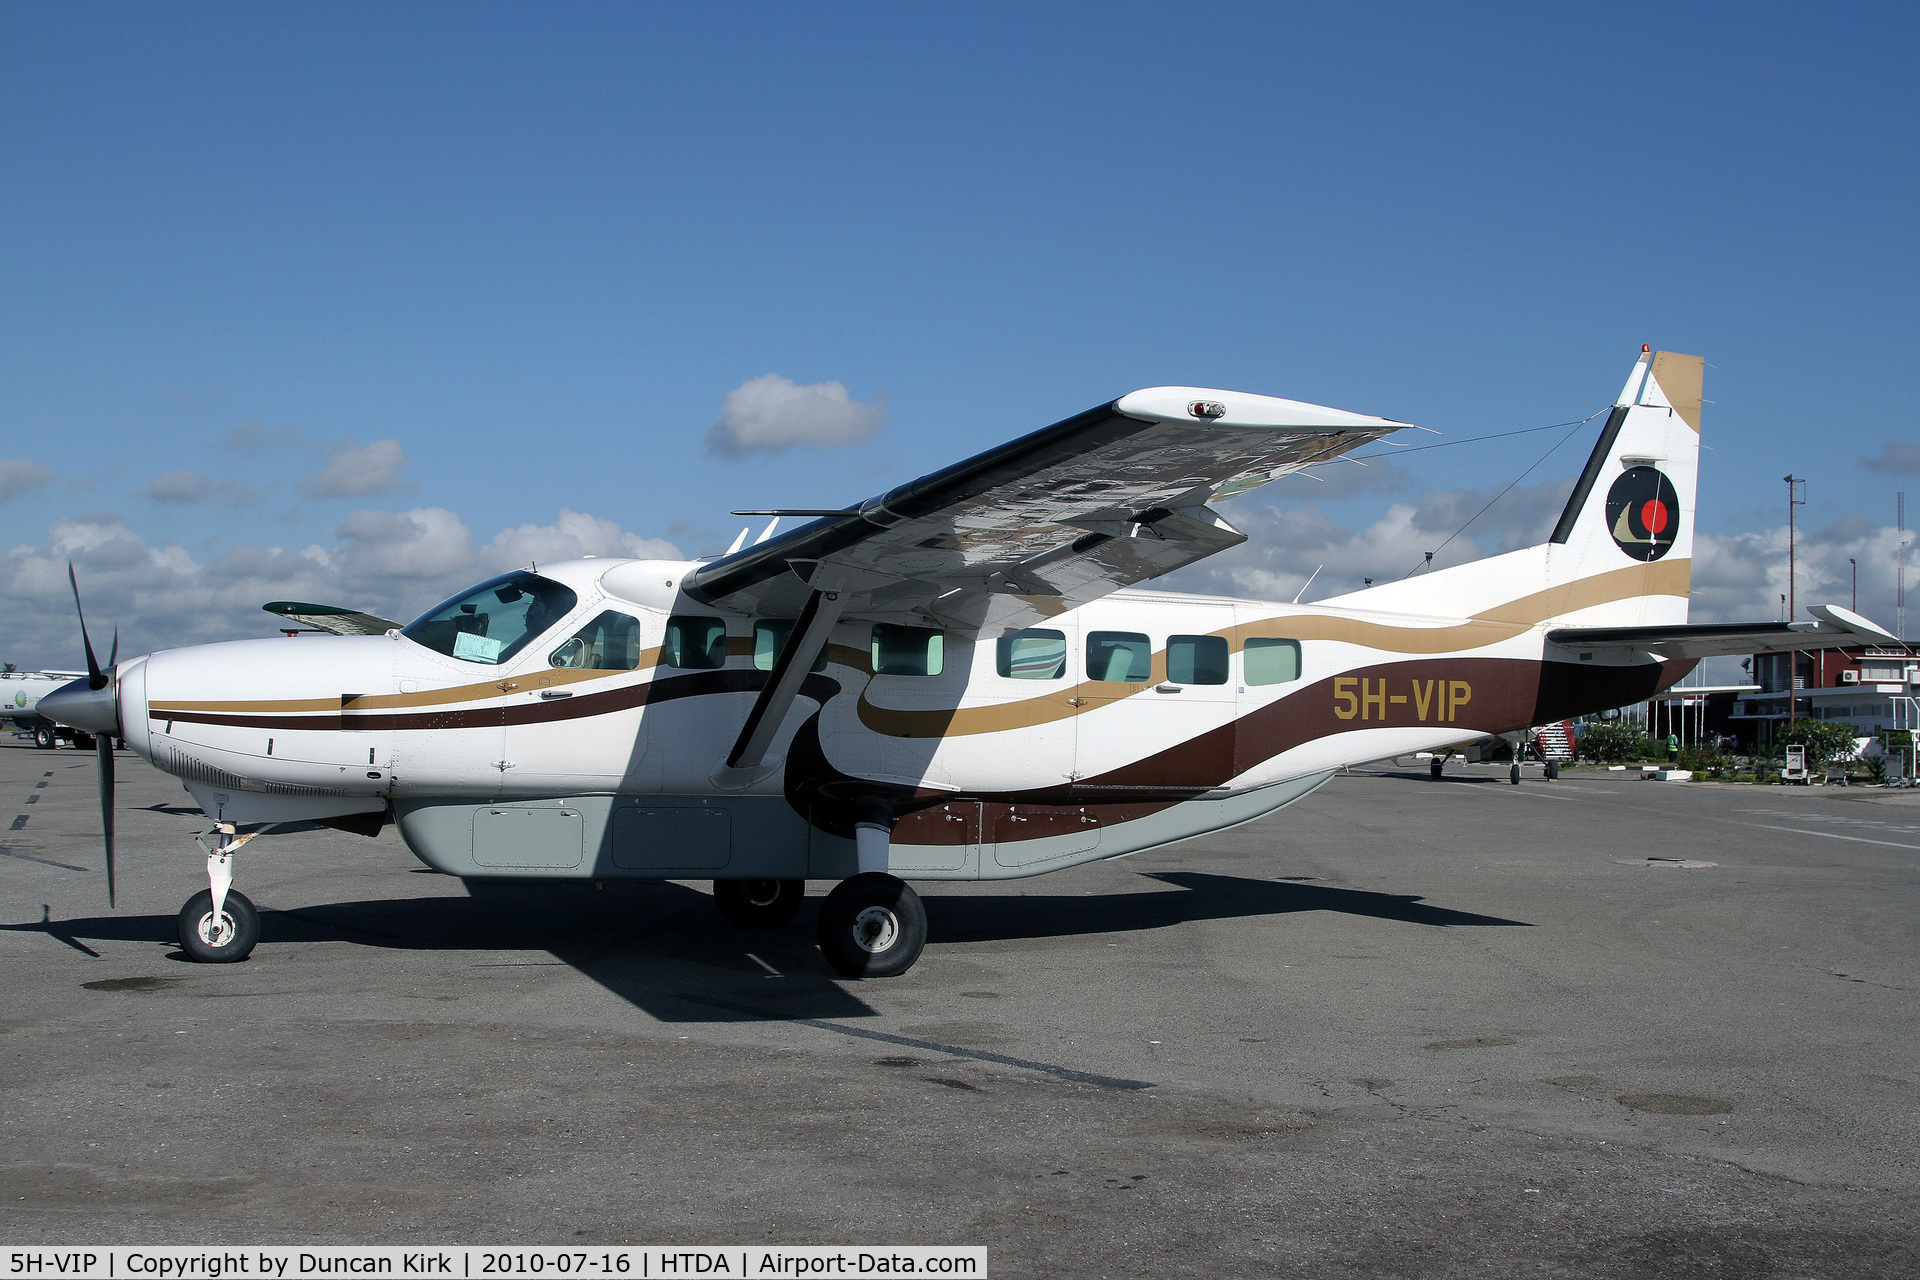 5H-VIP, 1998 Cessna 208B Grand Caravan C/N 208B-0714, Sleek looking